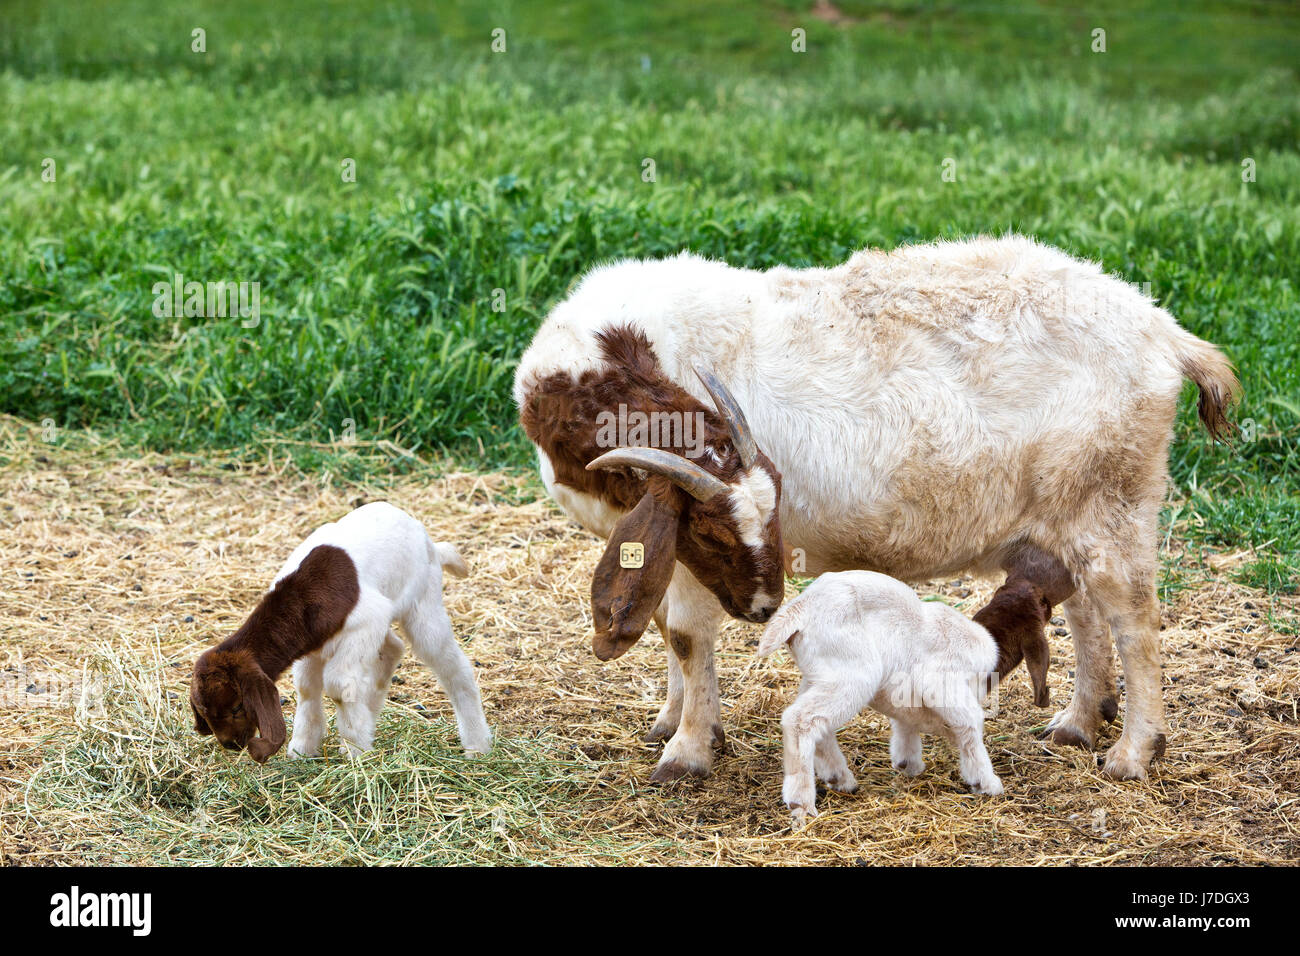 Mutter Boer Ziege 'Capra aegagraus hircus' mit zwei Tage alten Kindern, Pflege & Fütterung auf Luzerne, Barnhof, Grünfeld, Kalifornien, Calaveras County. Stockfoto